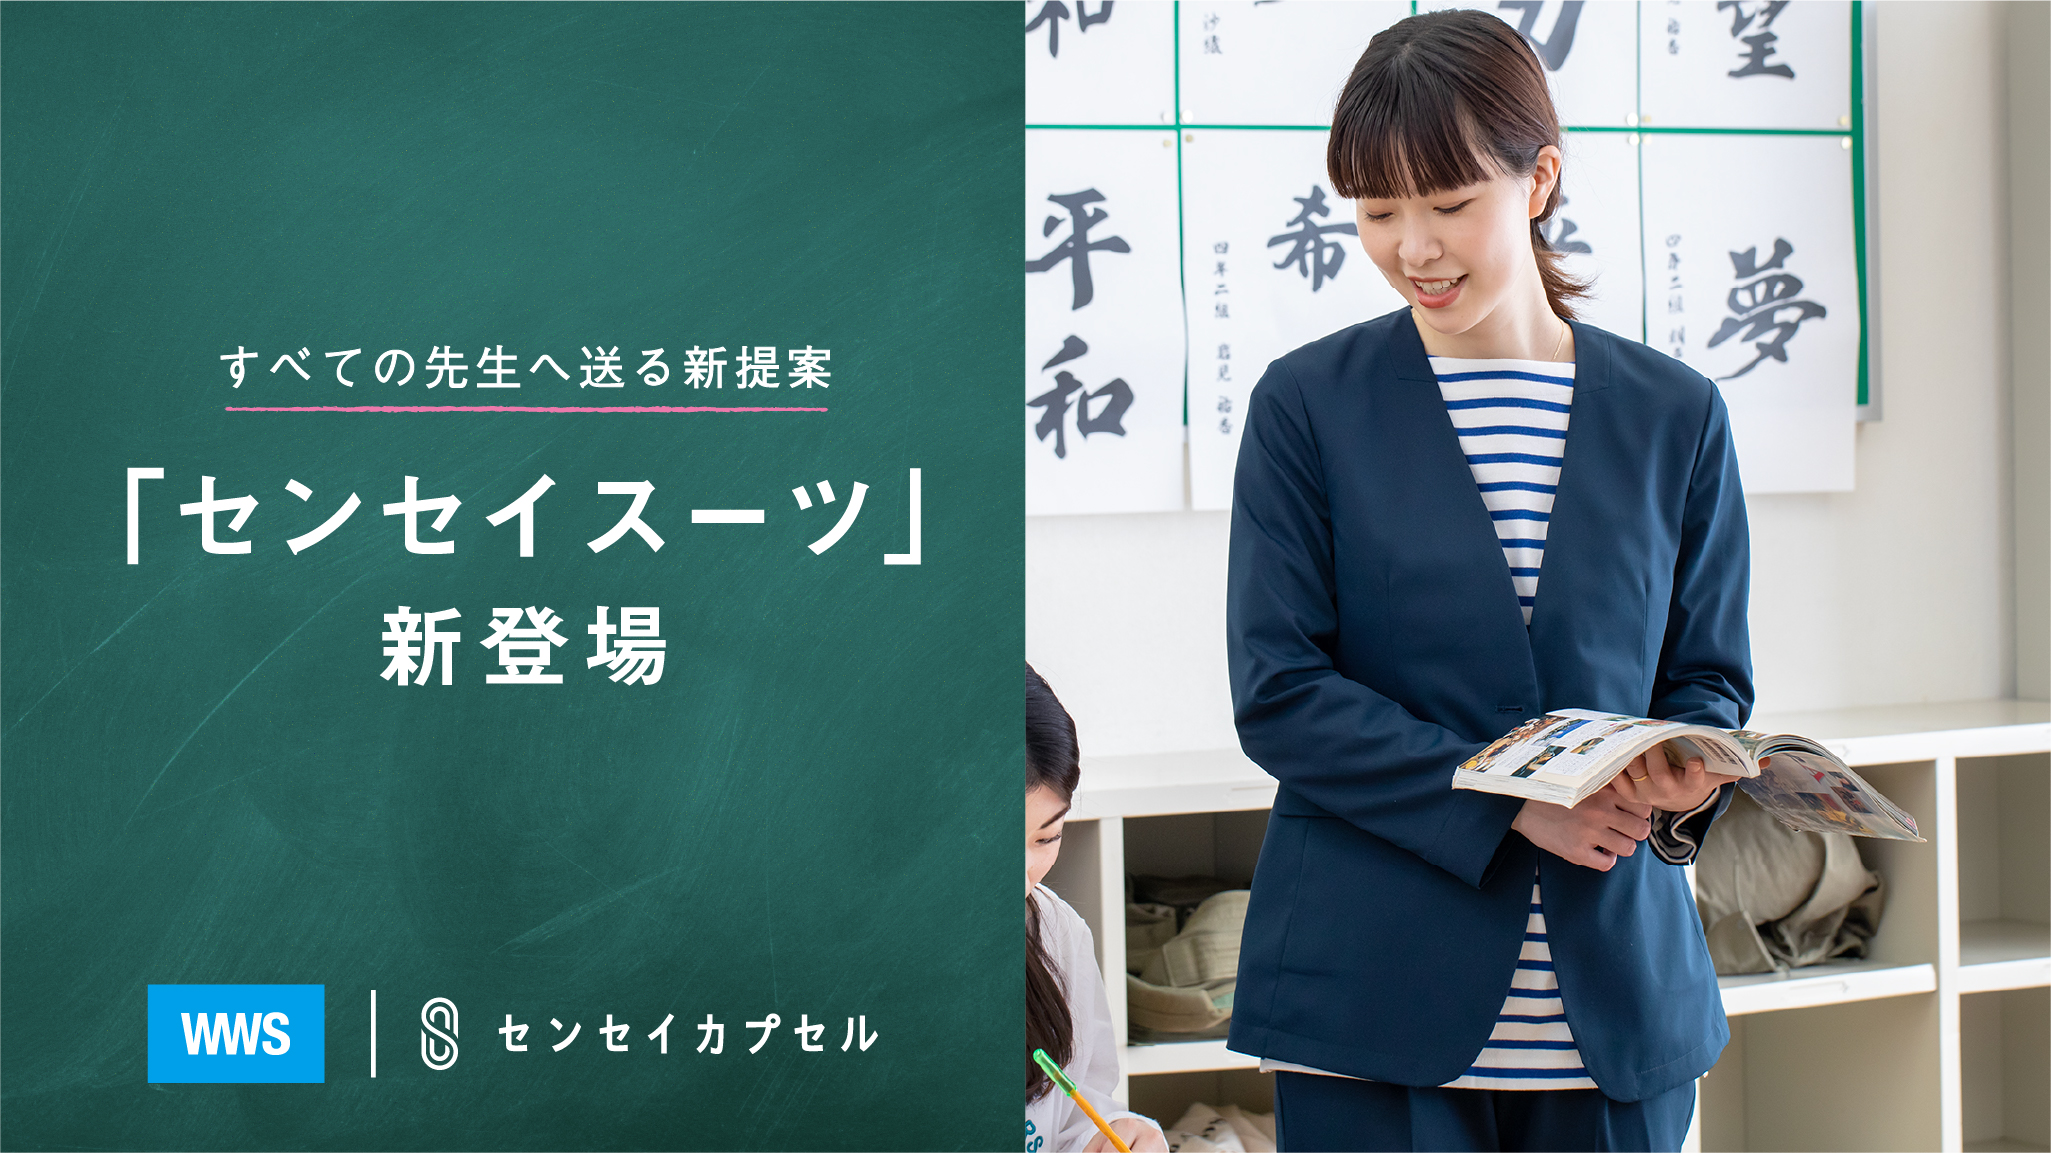 “先生にも制服を” 日本初となる「教職員用スーツ」が発売2週間でほぼ完売。早くも増産決定